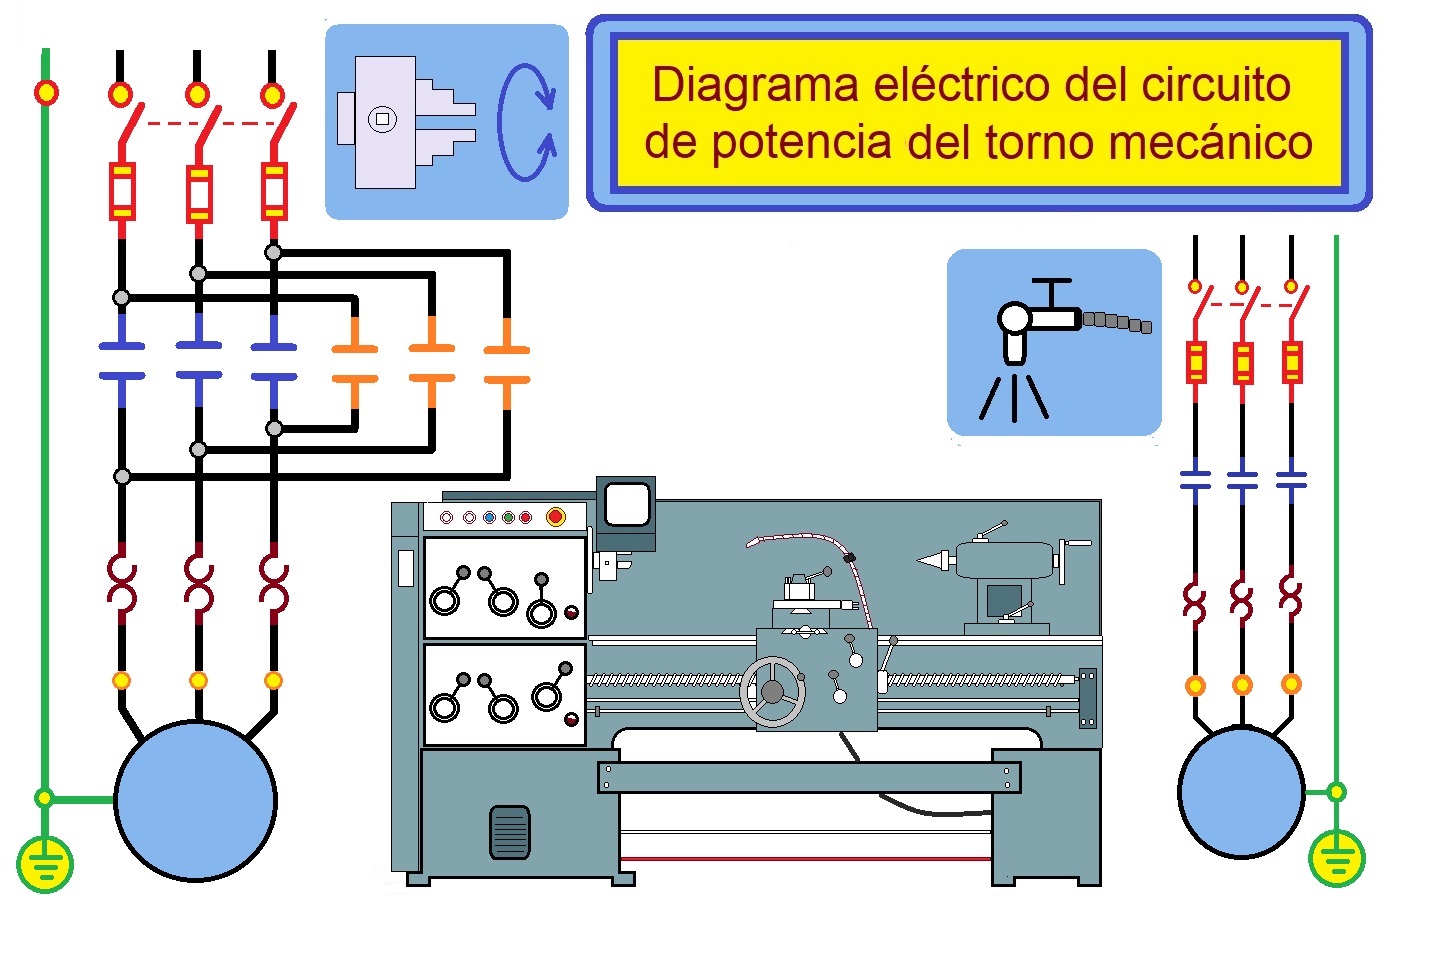 coparoman: Diagrama eléctrico del circuito de potencia del torno mecánico